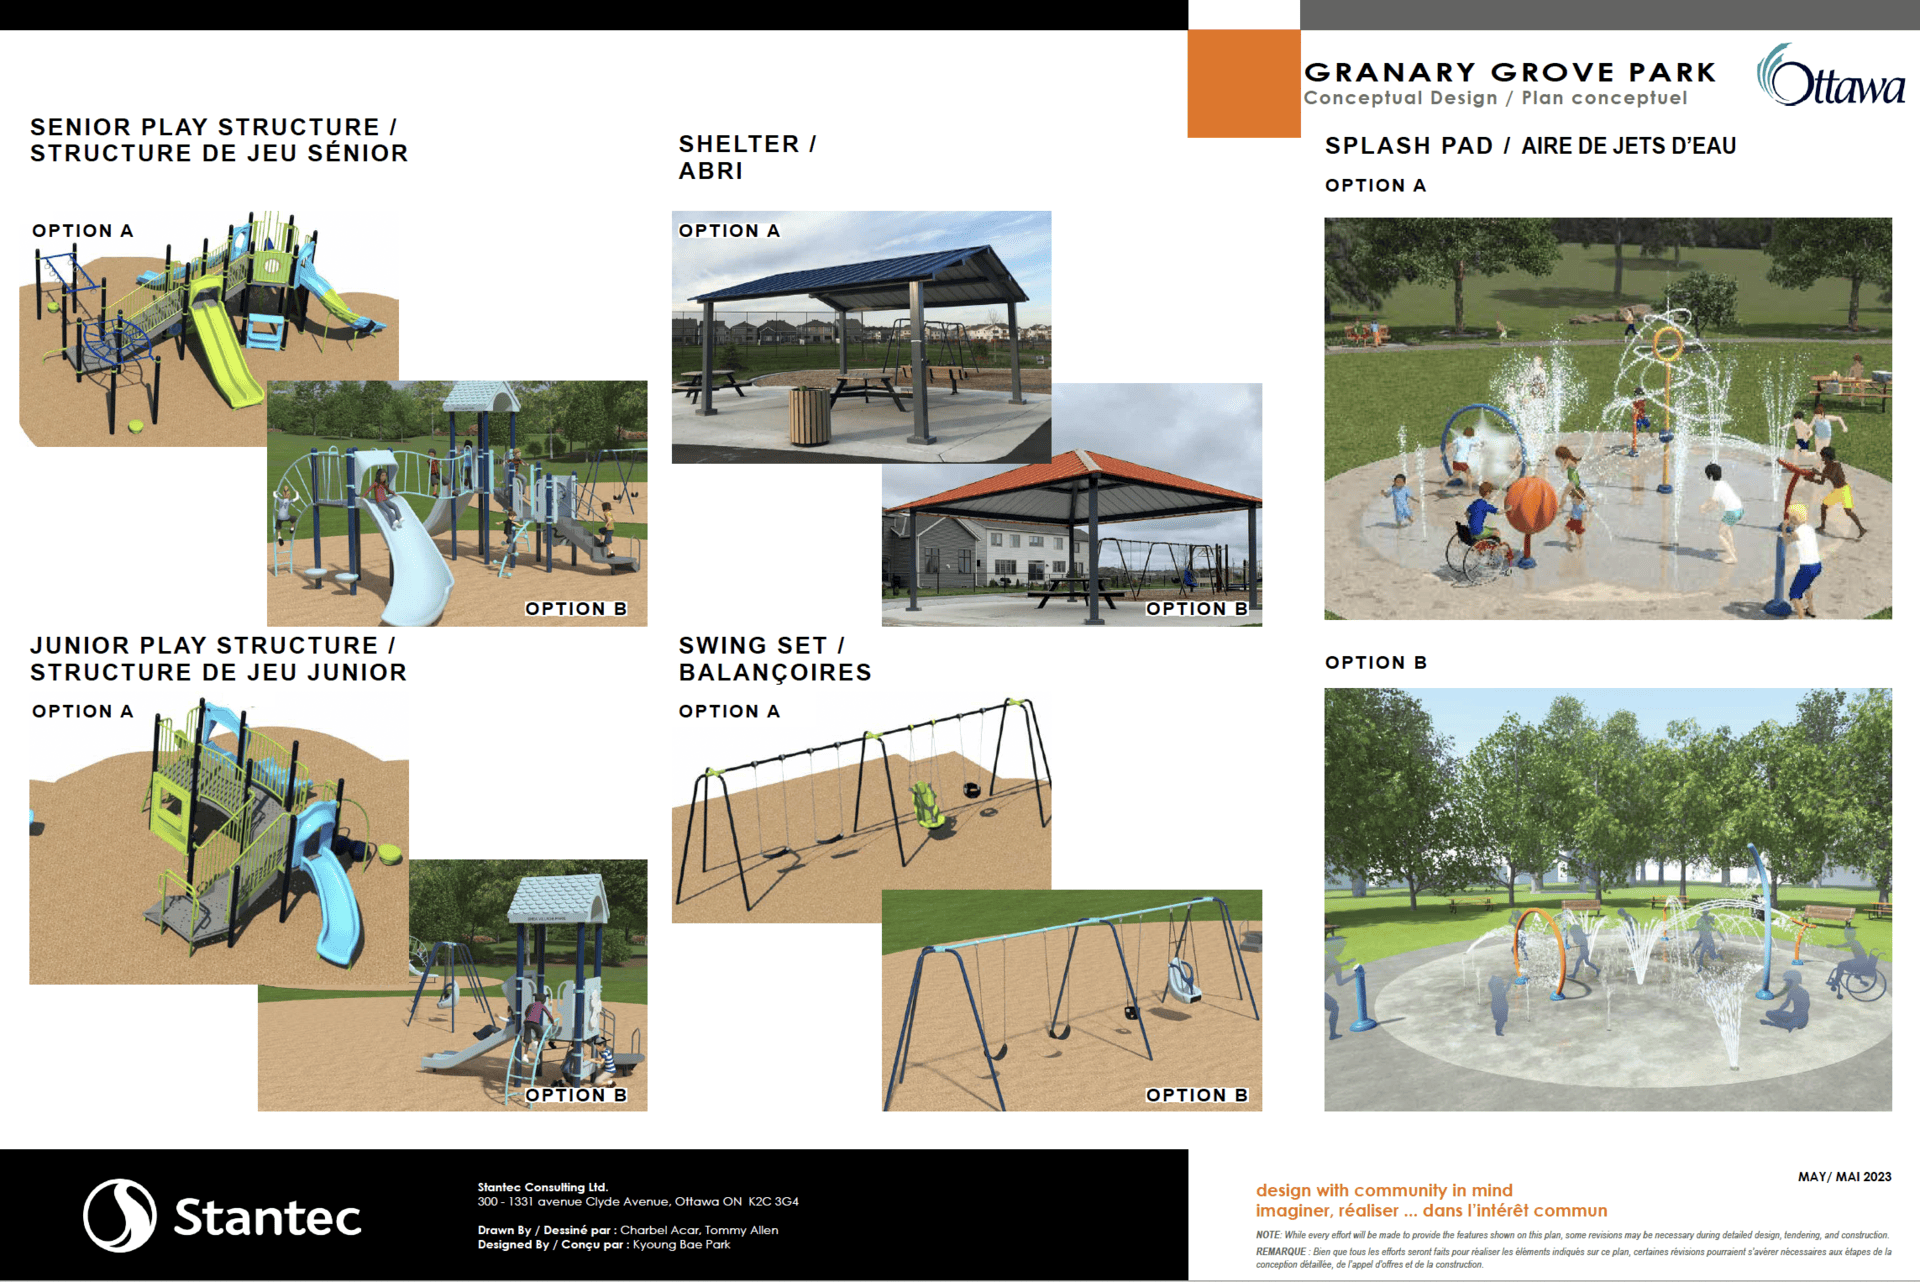 Granary Grove Park design details